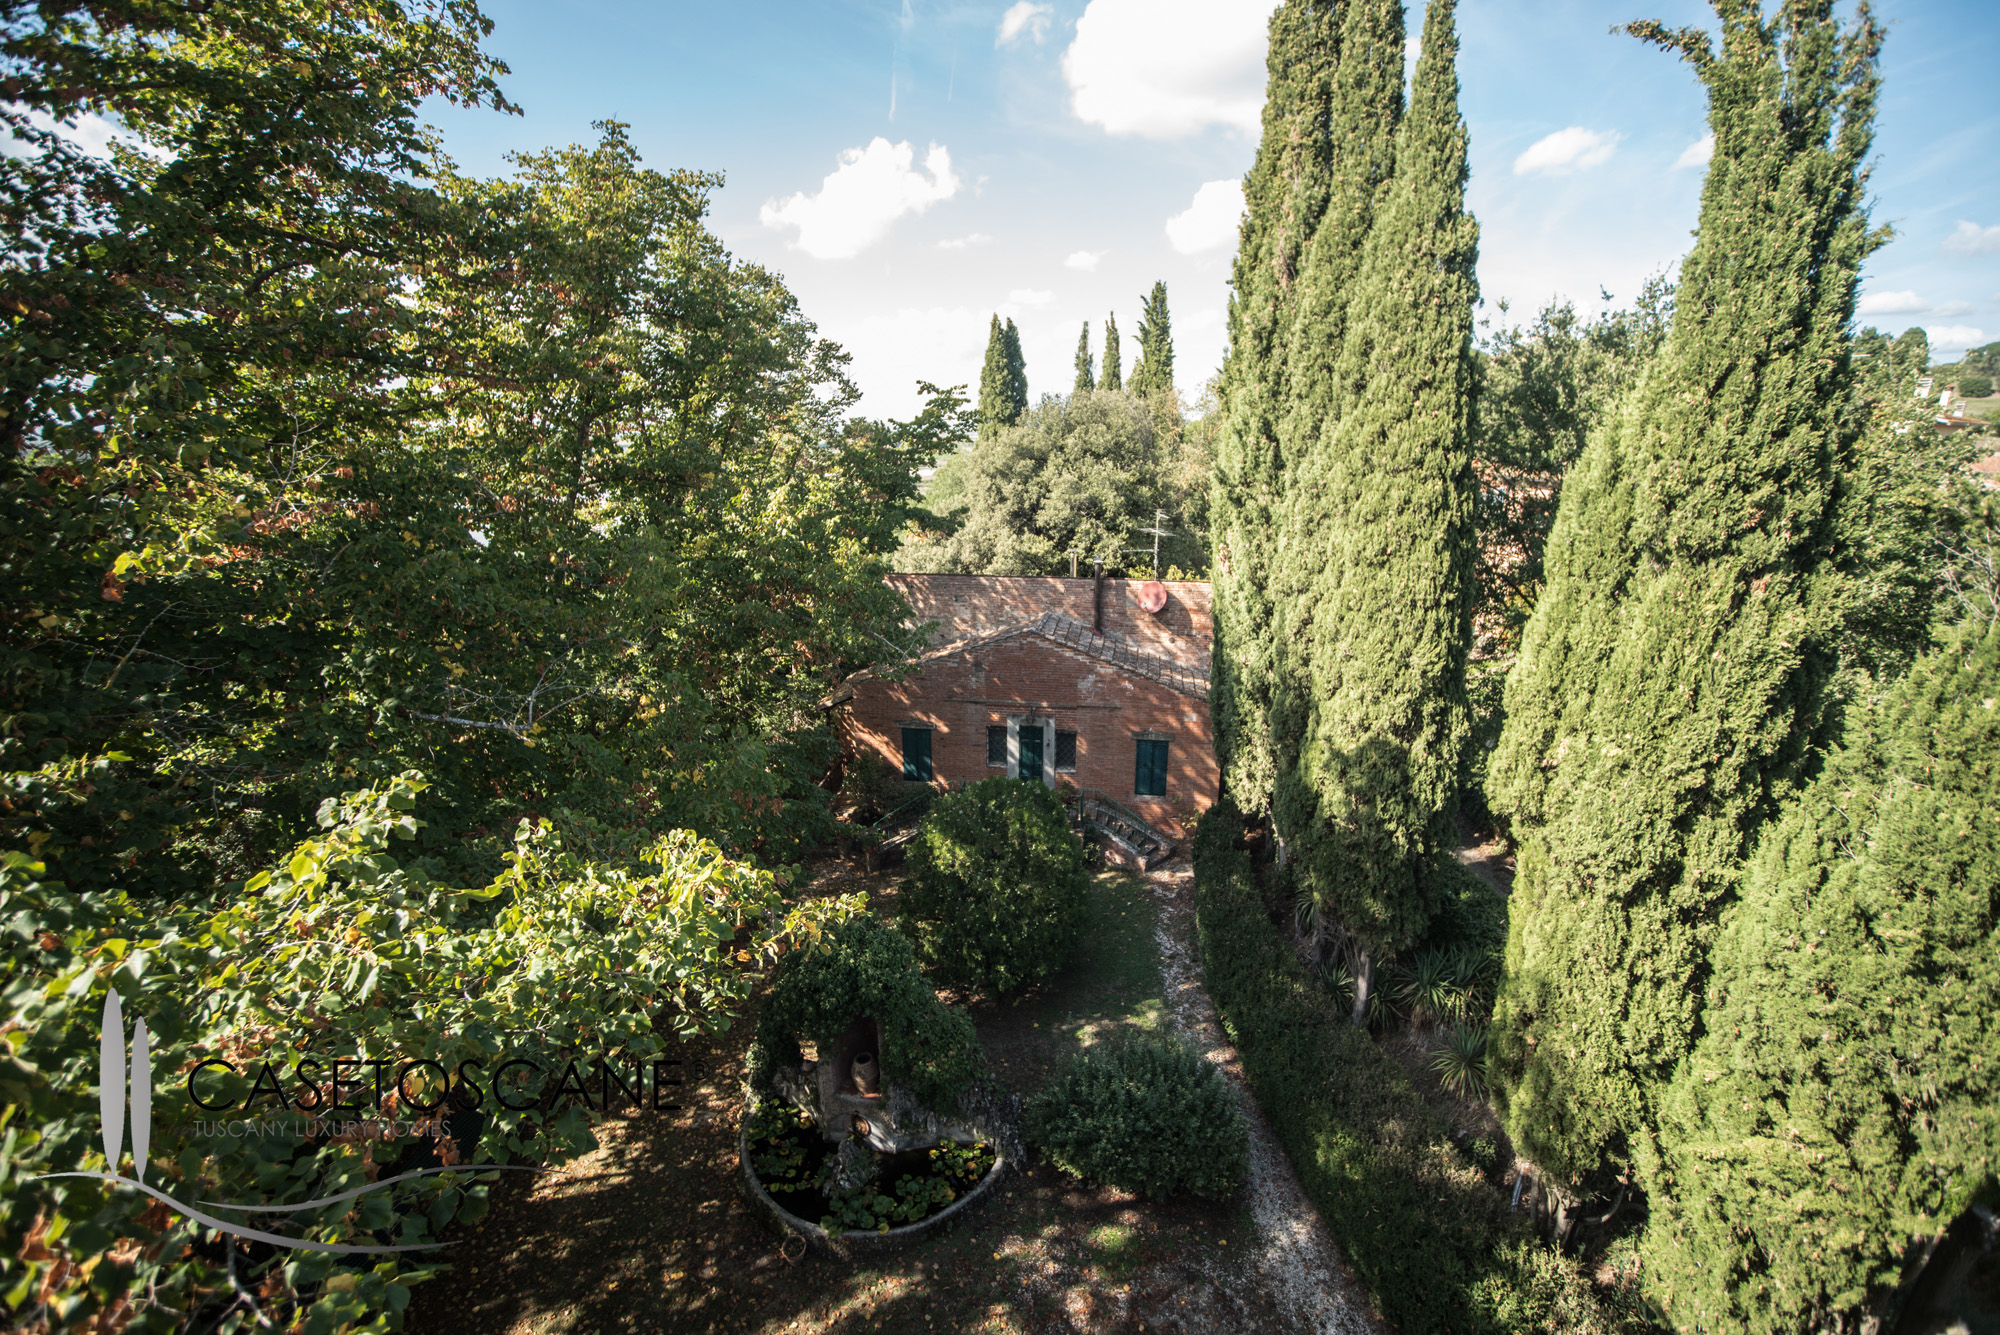 2930 - Proprietà di prestigio con villa liberty e casale ristrutturato, con accesso al lago di Montepulciano (Siena).